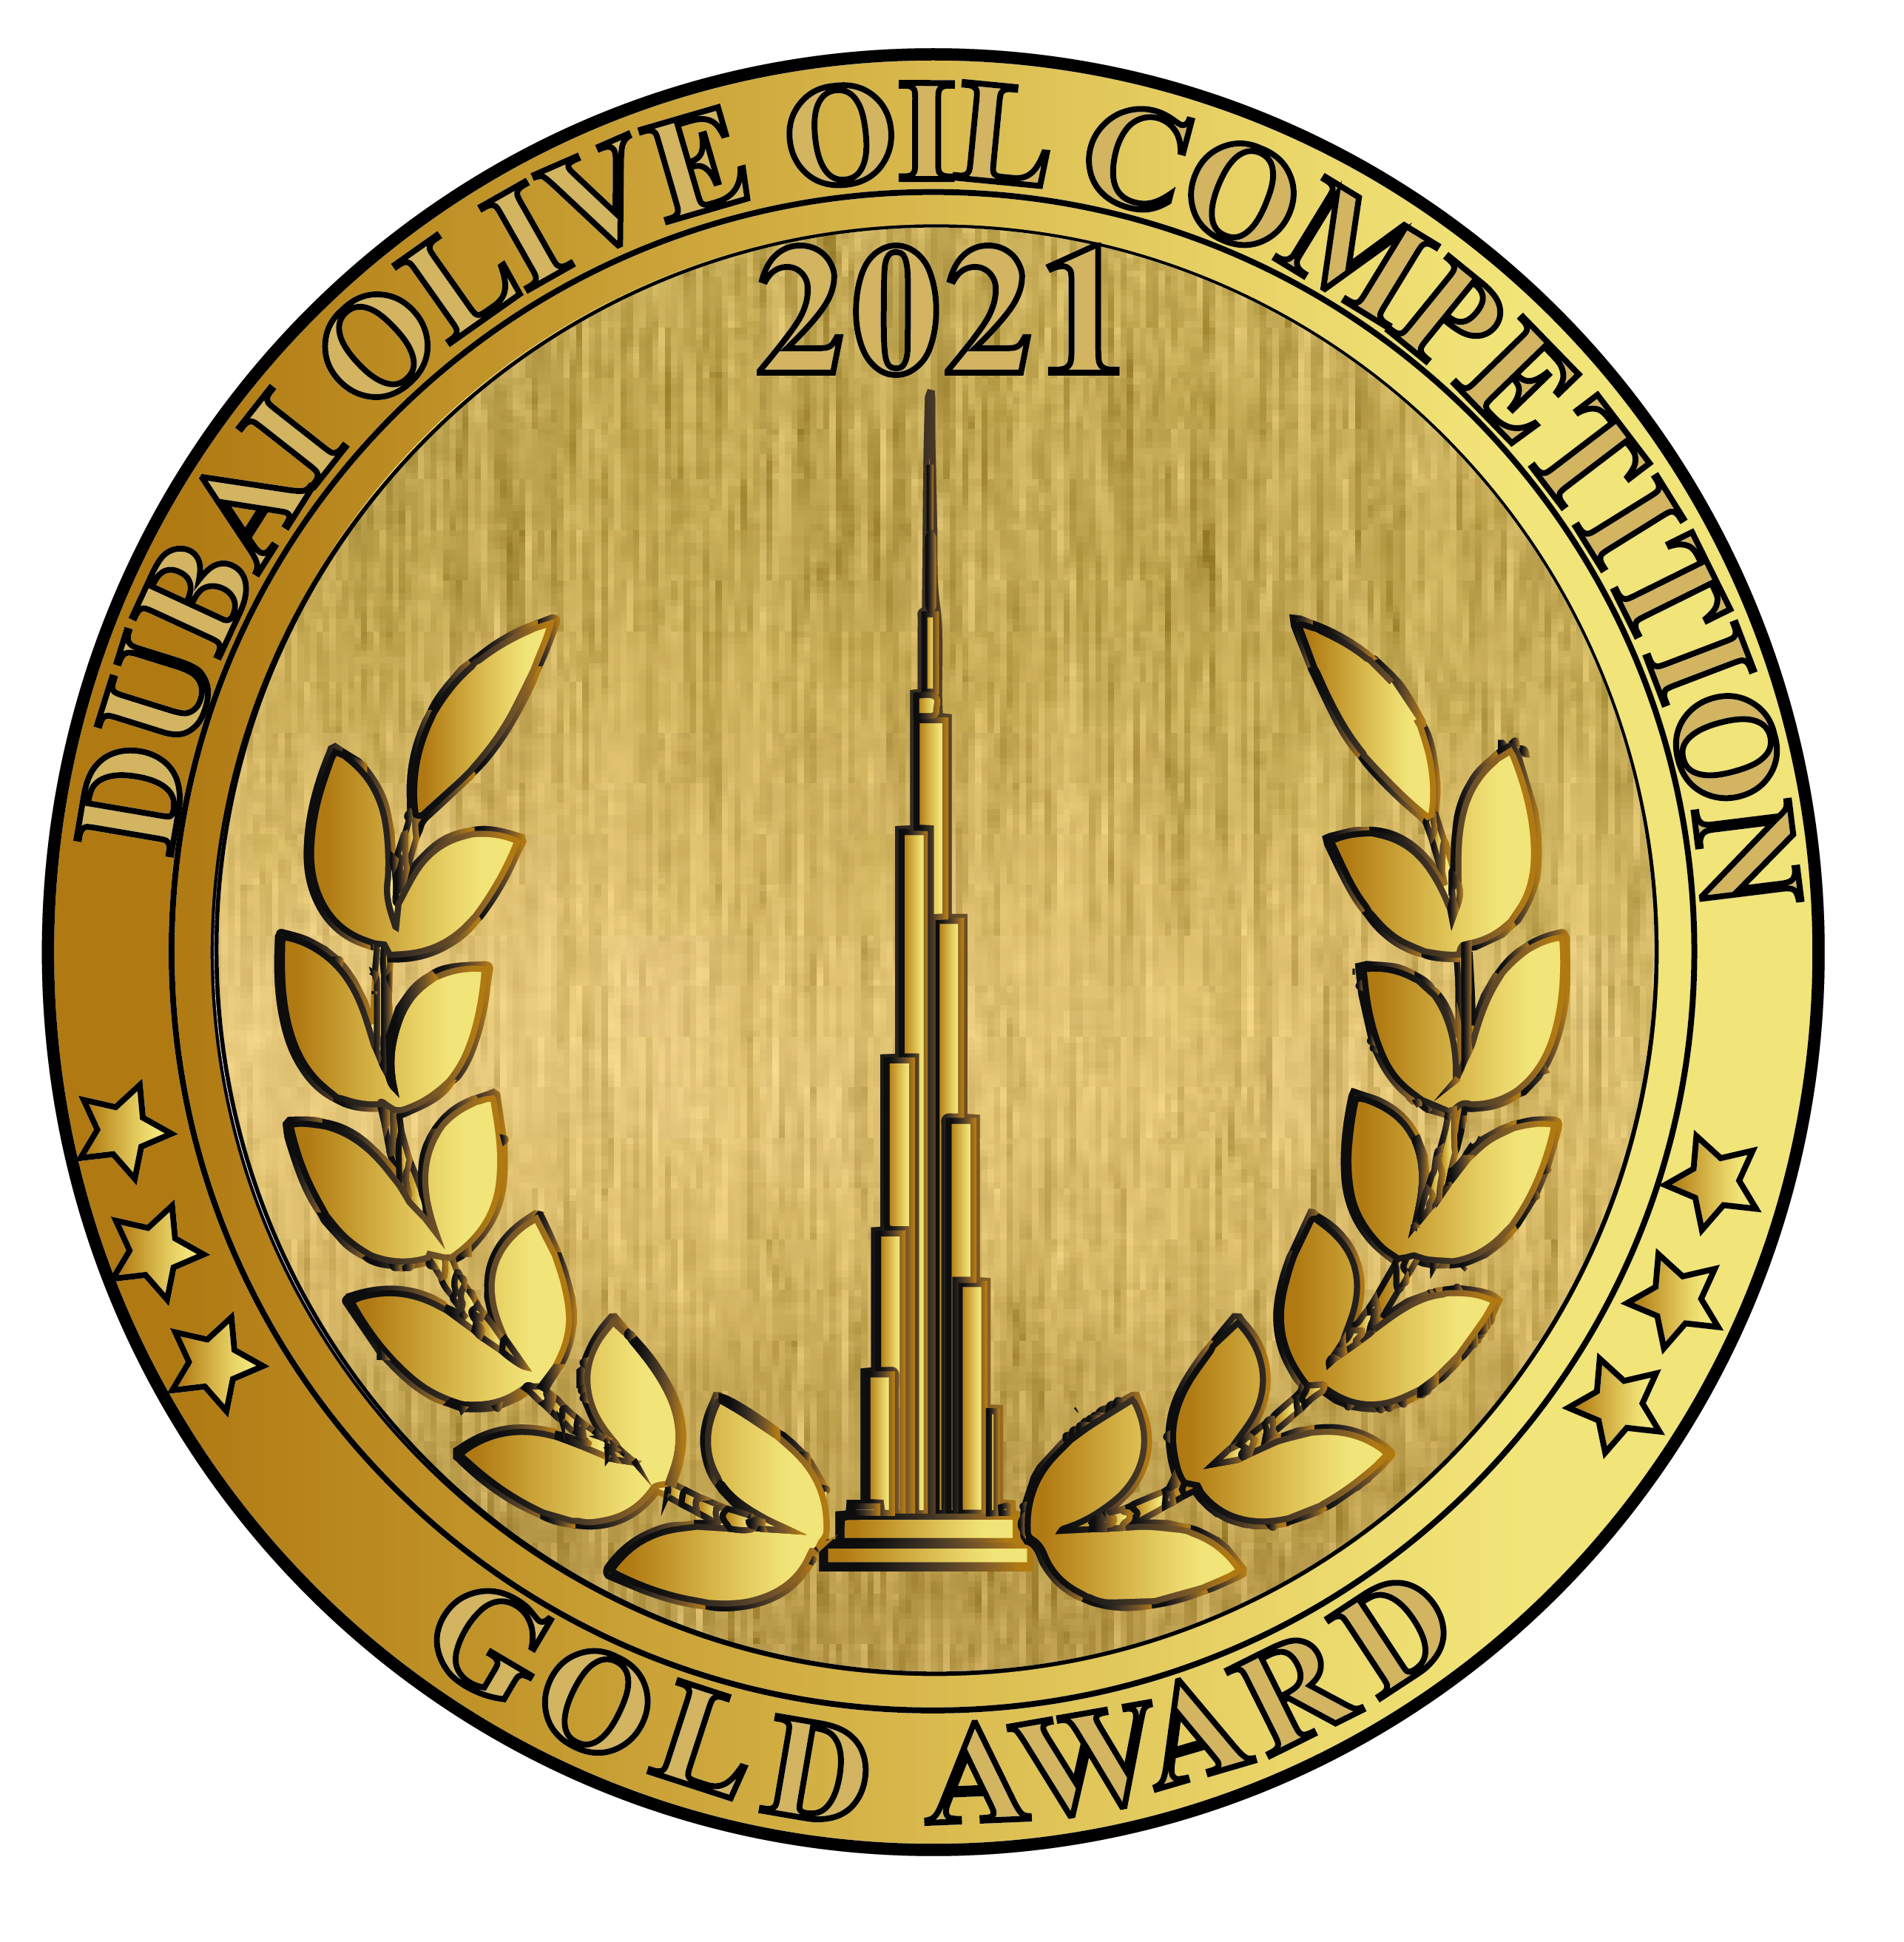 Dubai - Gold Award 2021